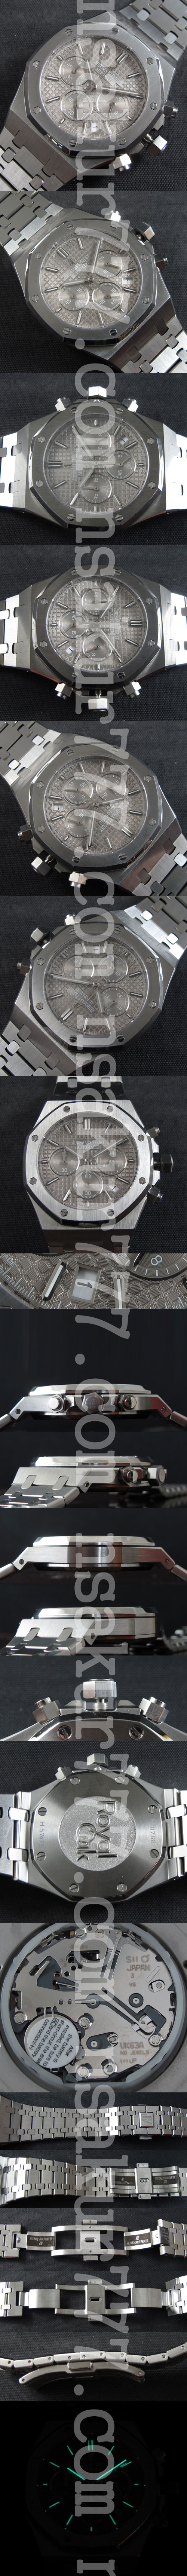 オーデマピゲ腕時計の説明